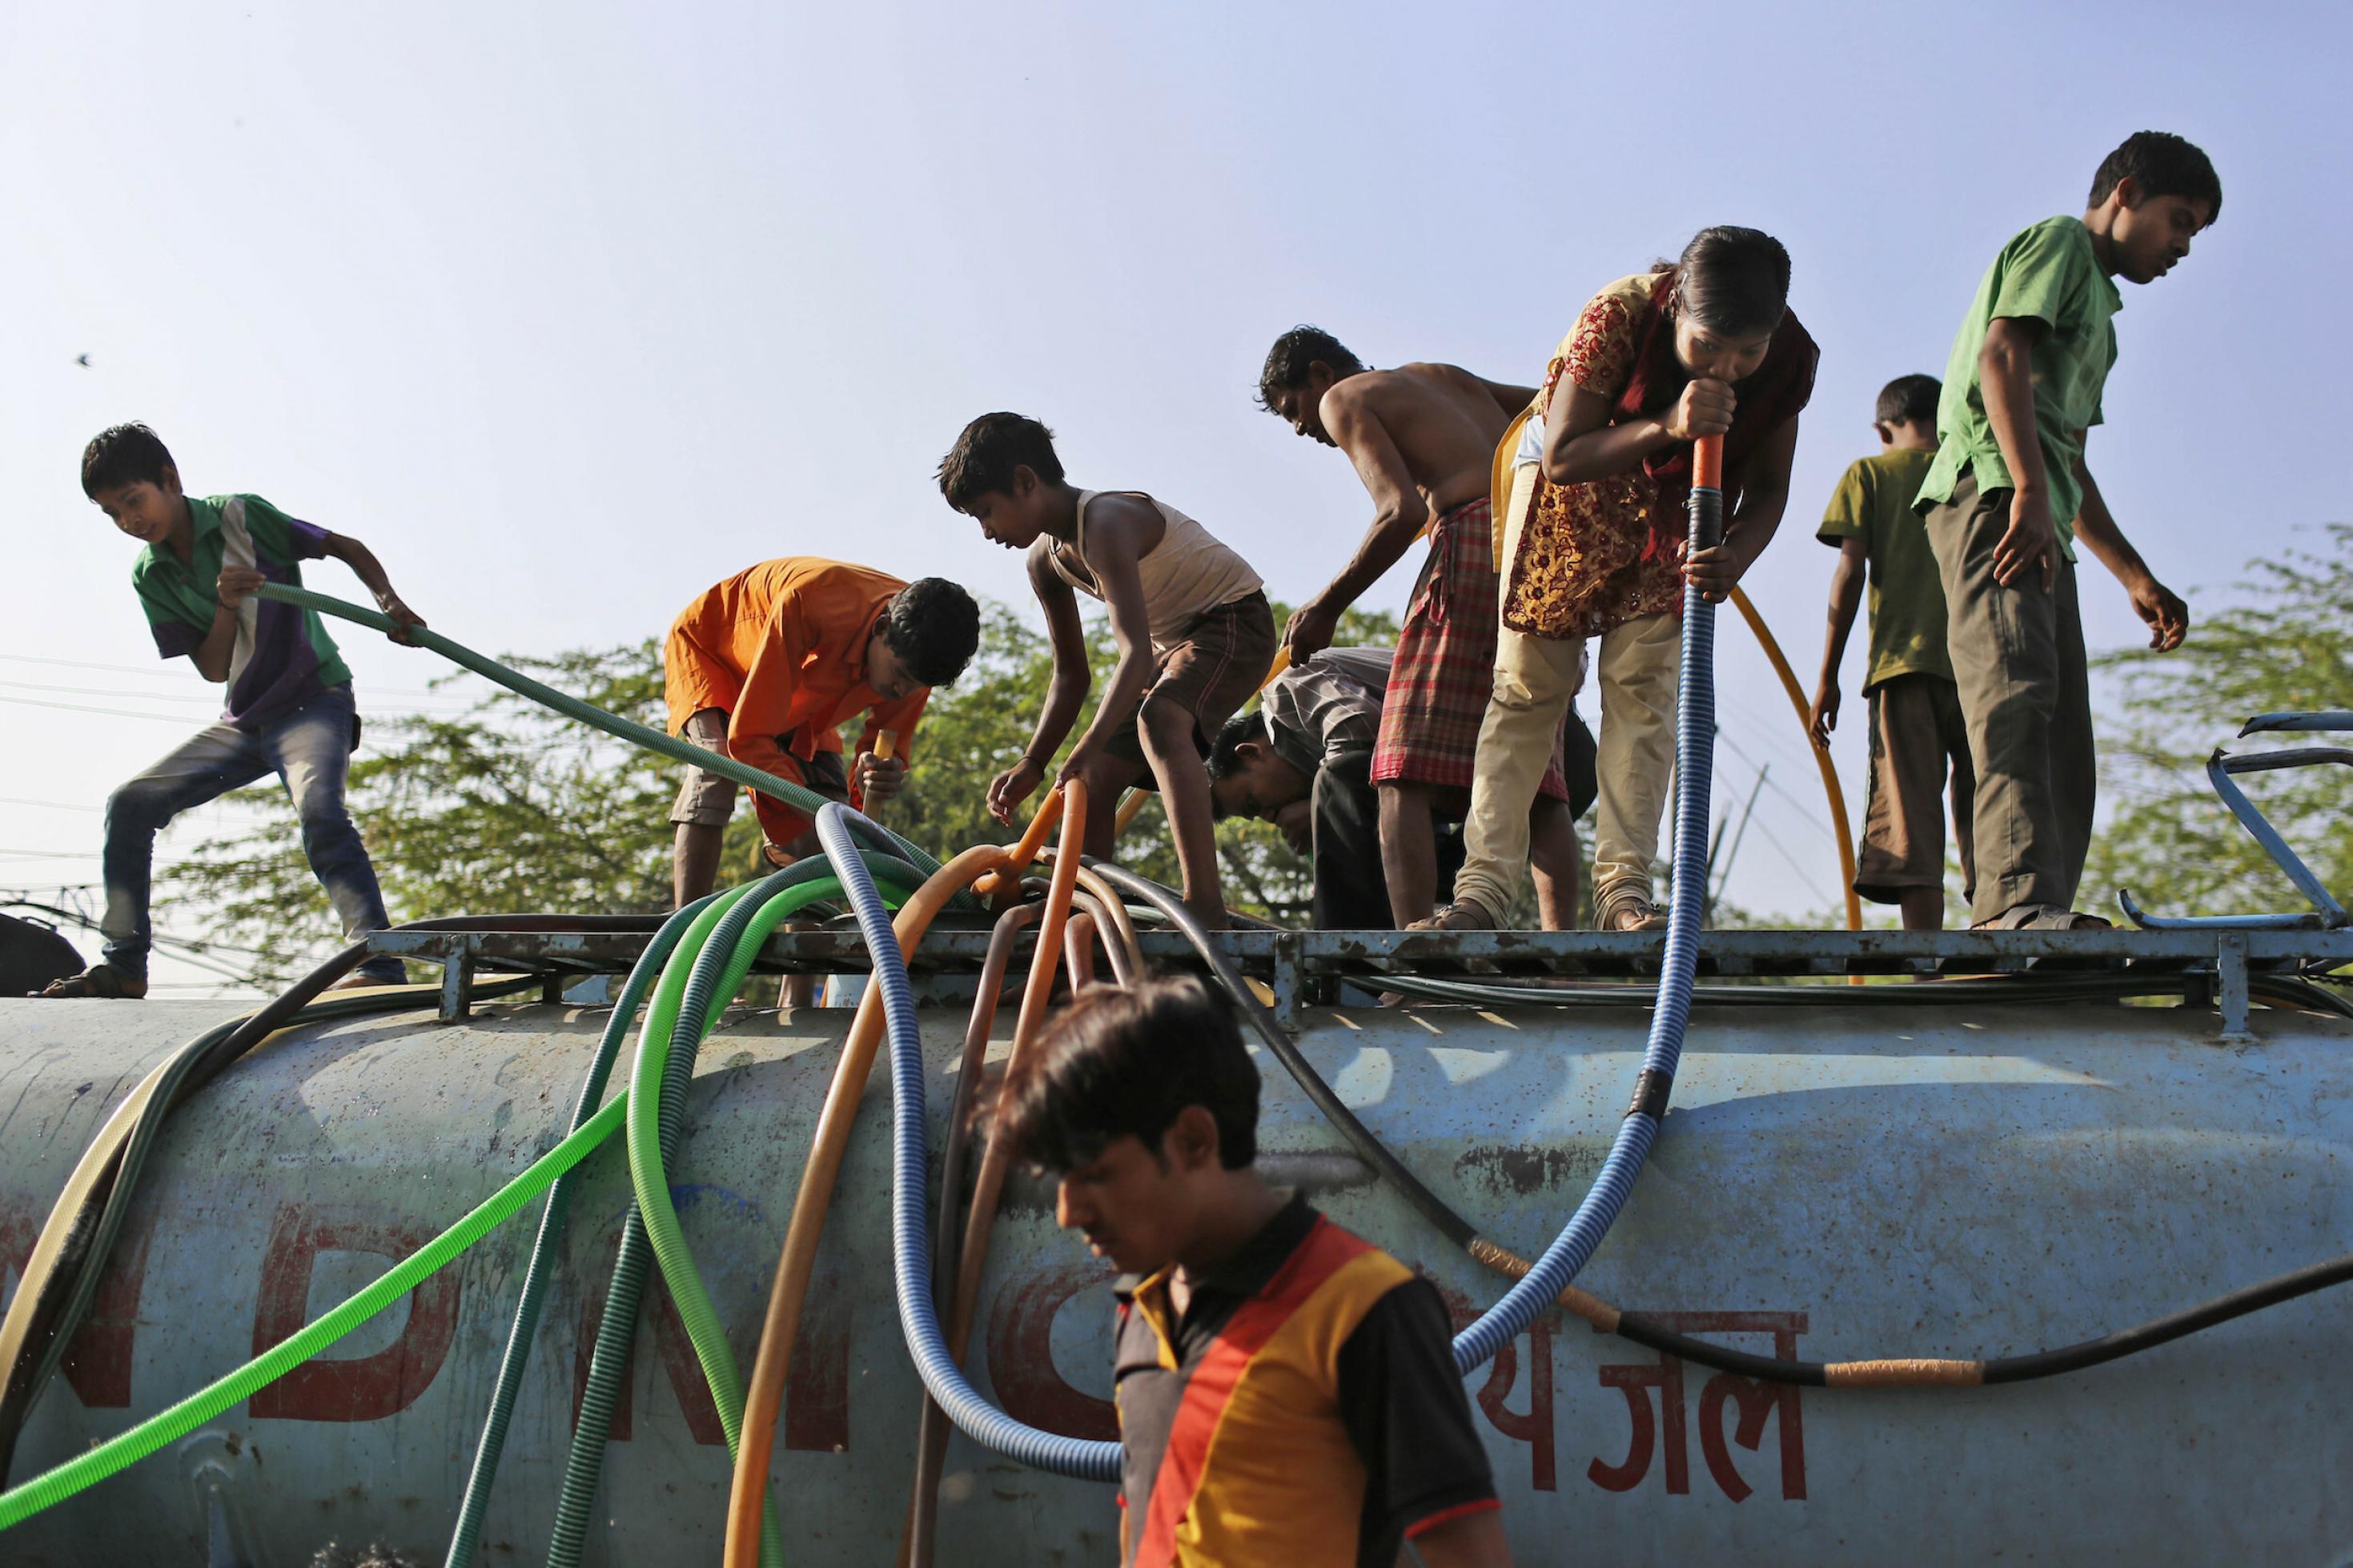 Jugendliche stehen auf einem Tanklastwagen mit Wasser und reichen Schläuche nach unten zum Befüllen von Behältern. Ein Mädchen trinkt Wasser direkt aus einem der großen Schläuche.